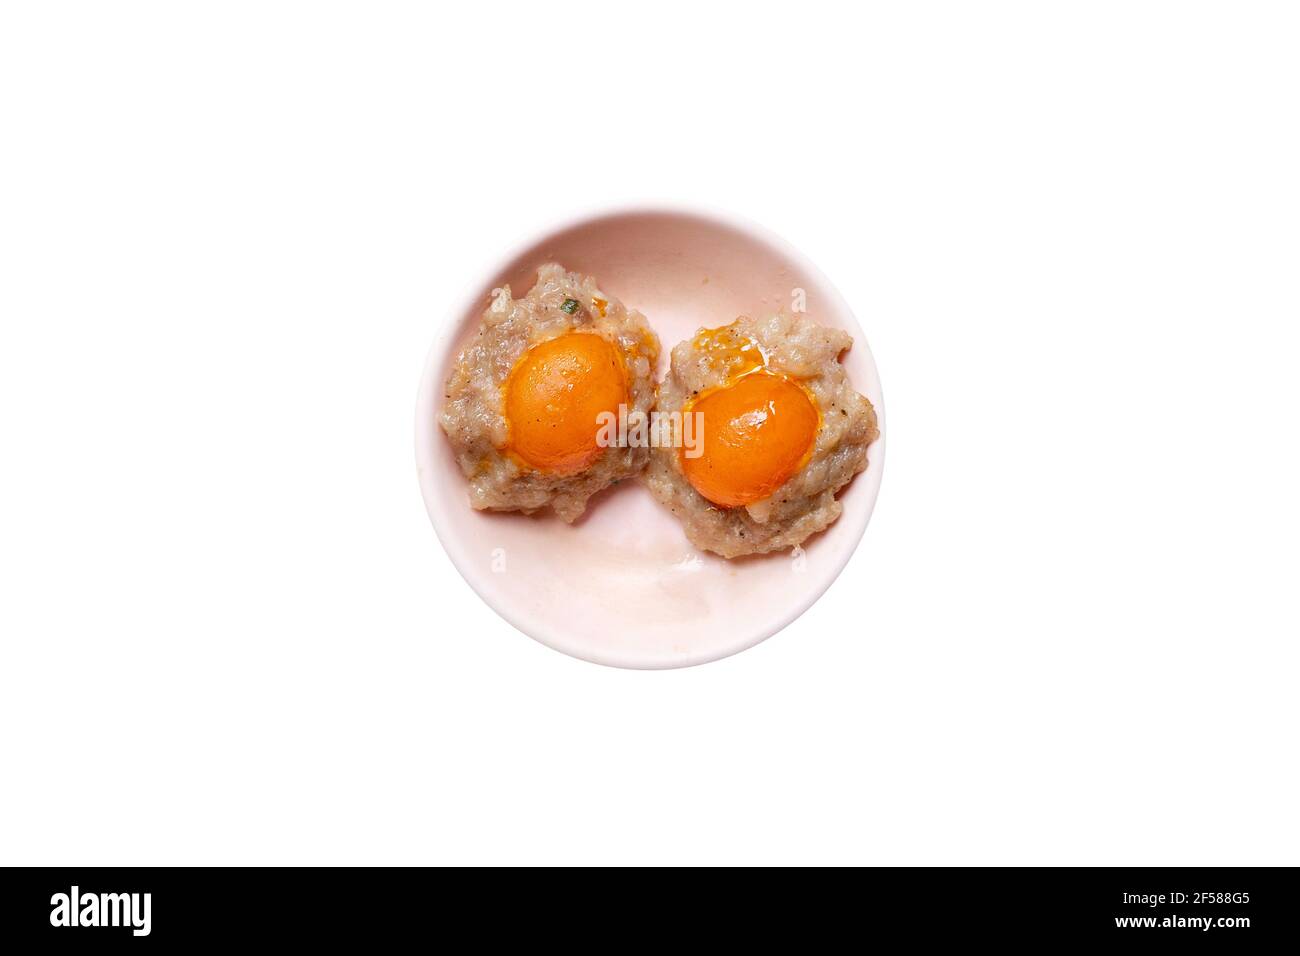 Tuorlo d'uovo salato e Dim Sum. Foto Stock